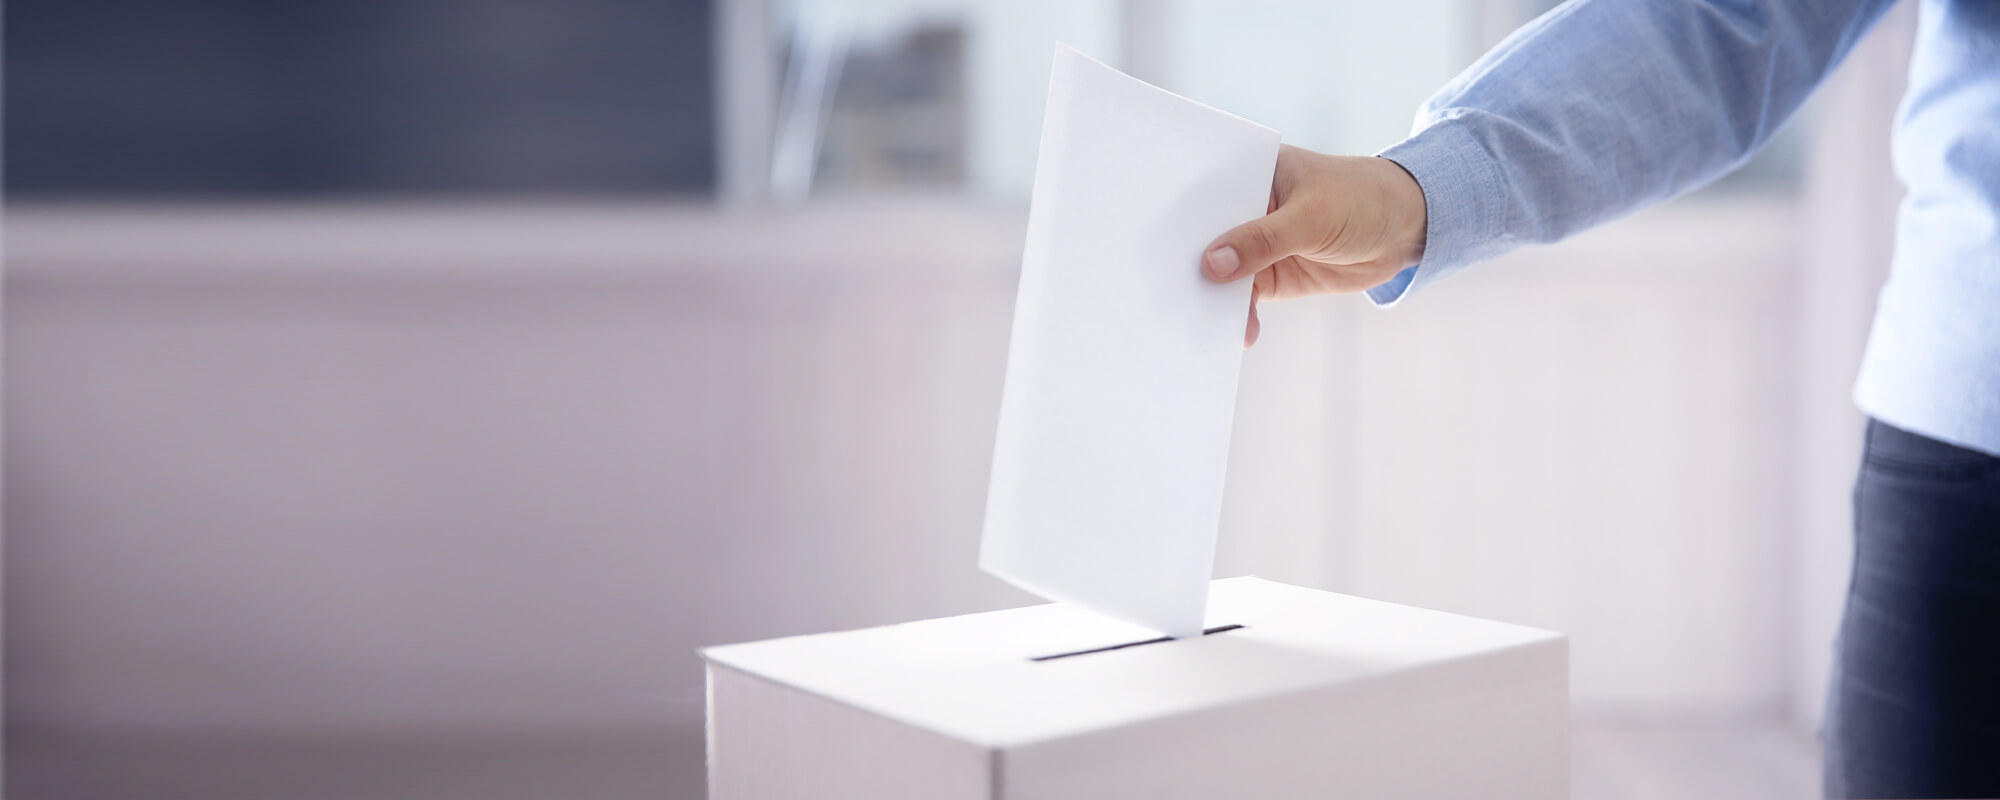 Ein Mann steckt einen Wahlschein in eine Wahlurne.